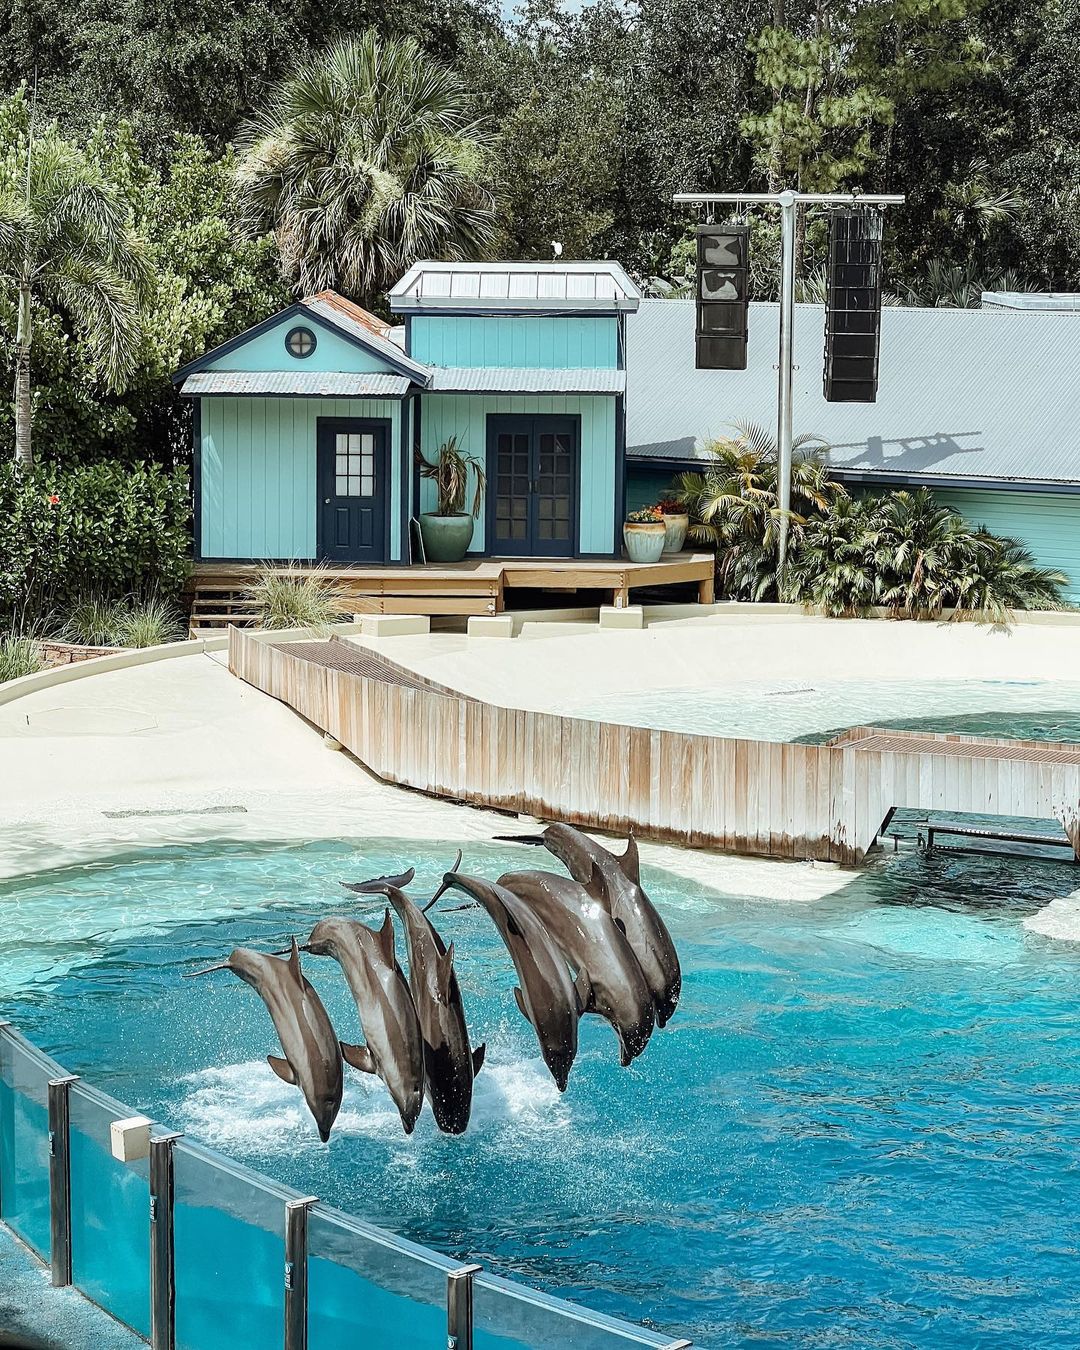 Días de delfines - Itinerario de SeaWorld Orlando